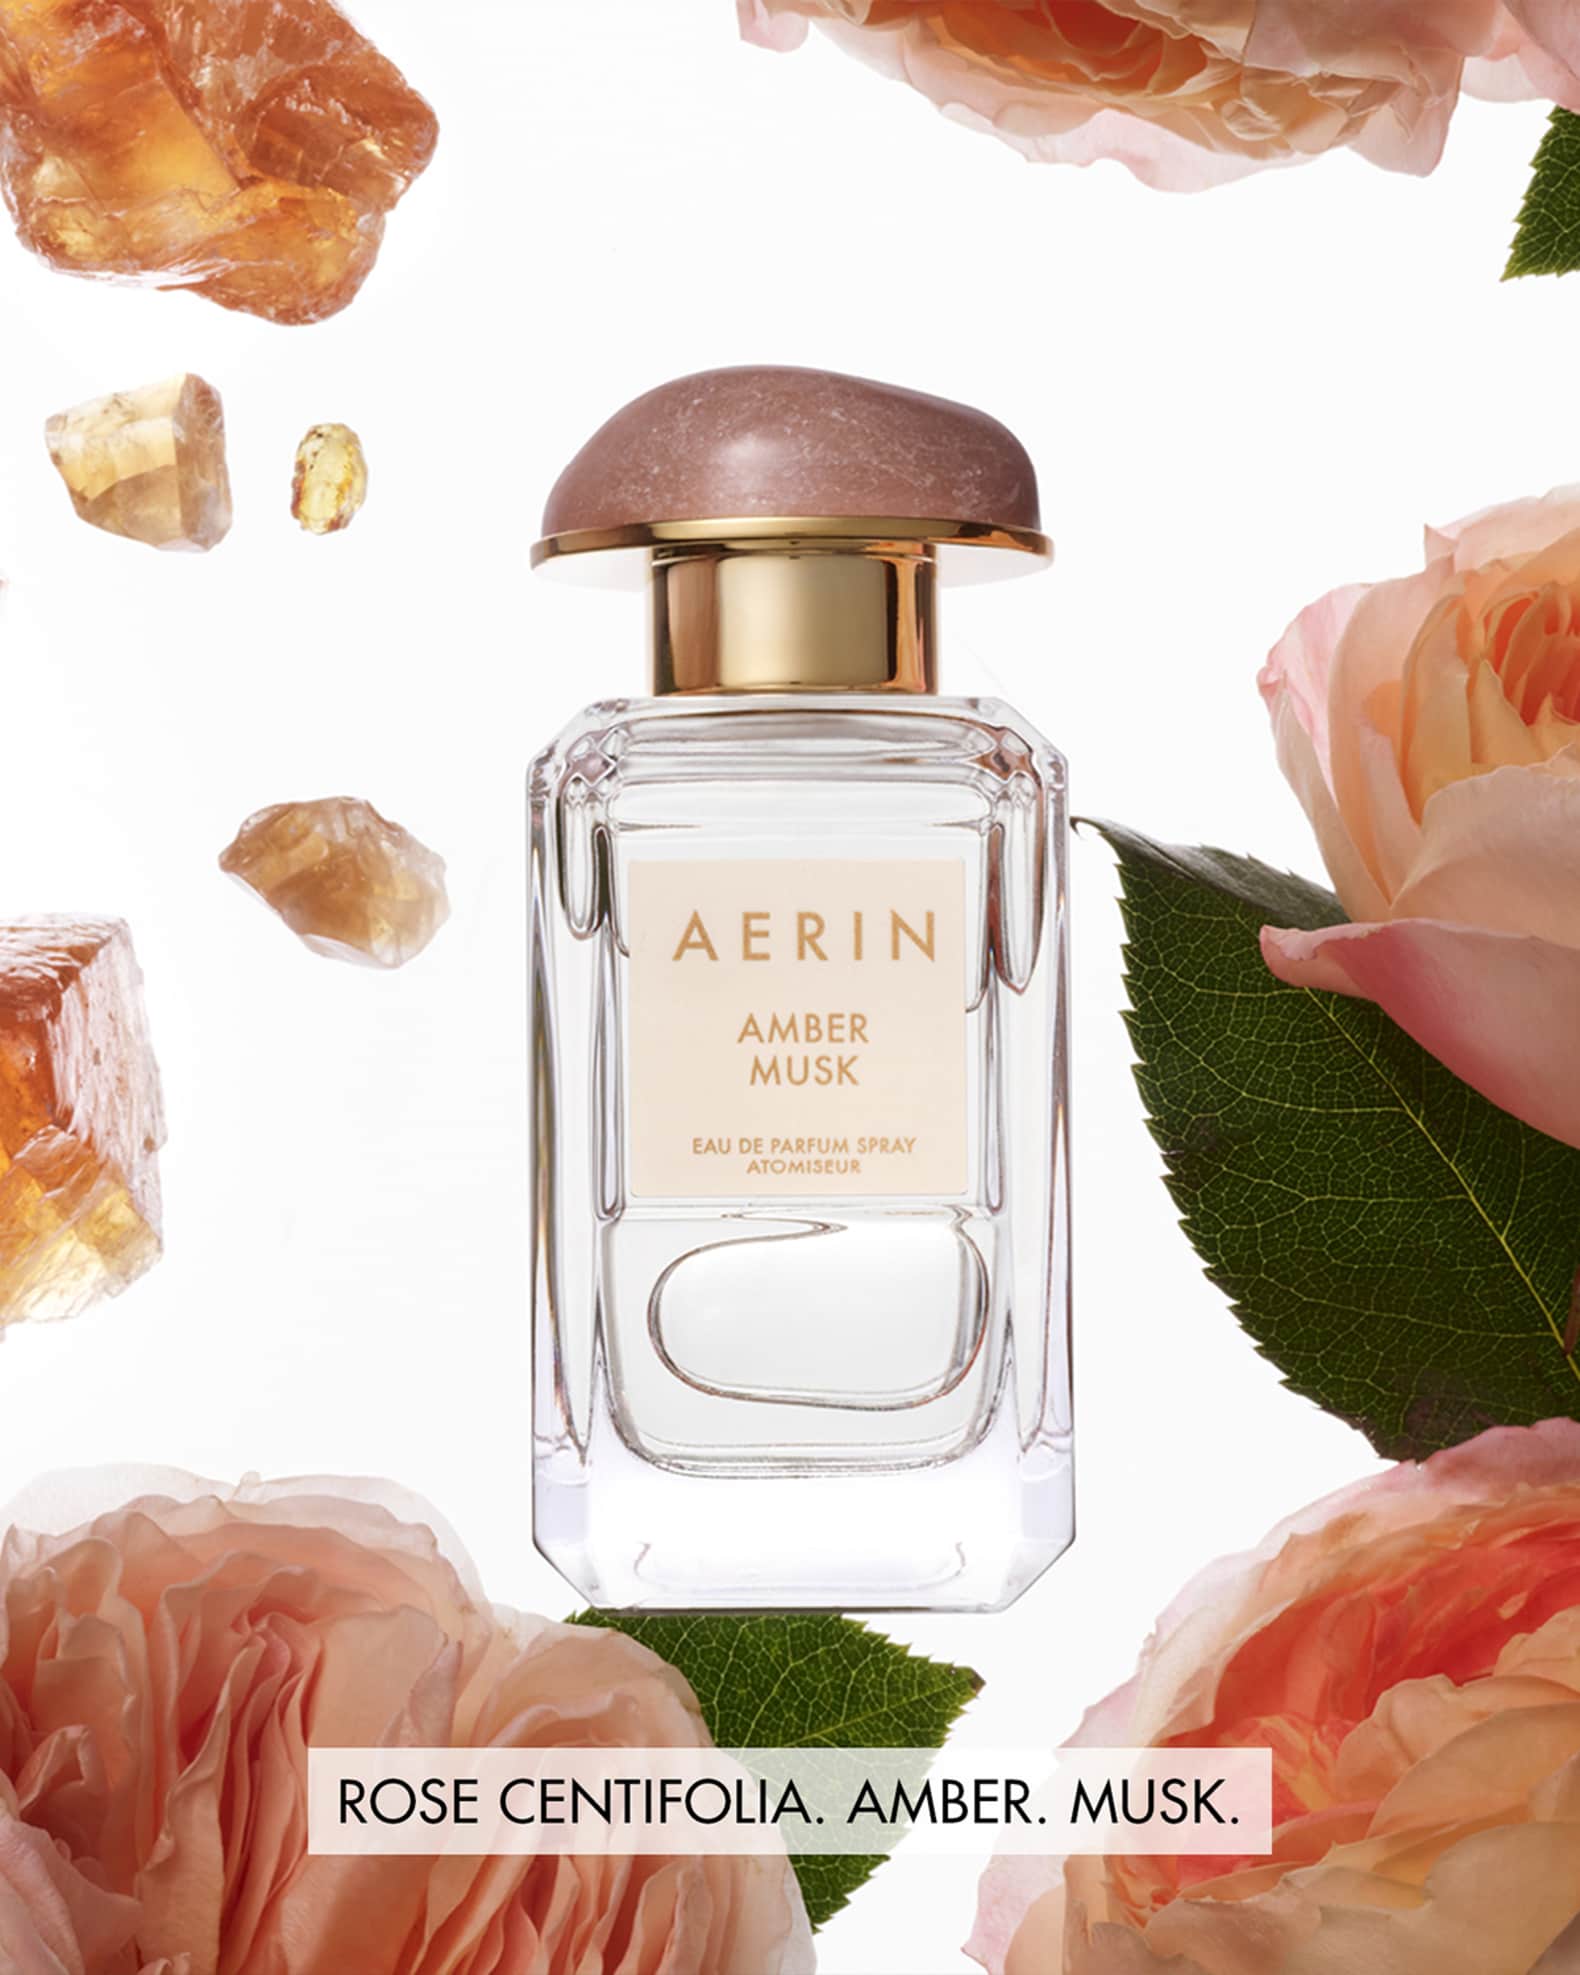 Amber Musk Eau de Parfum - AERIN